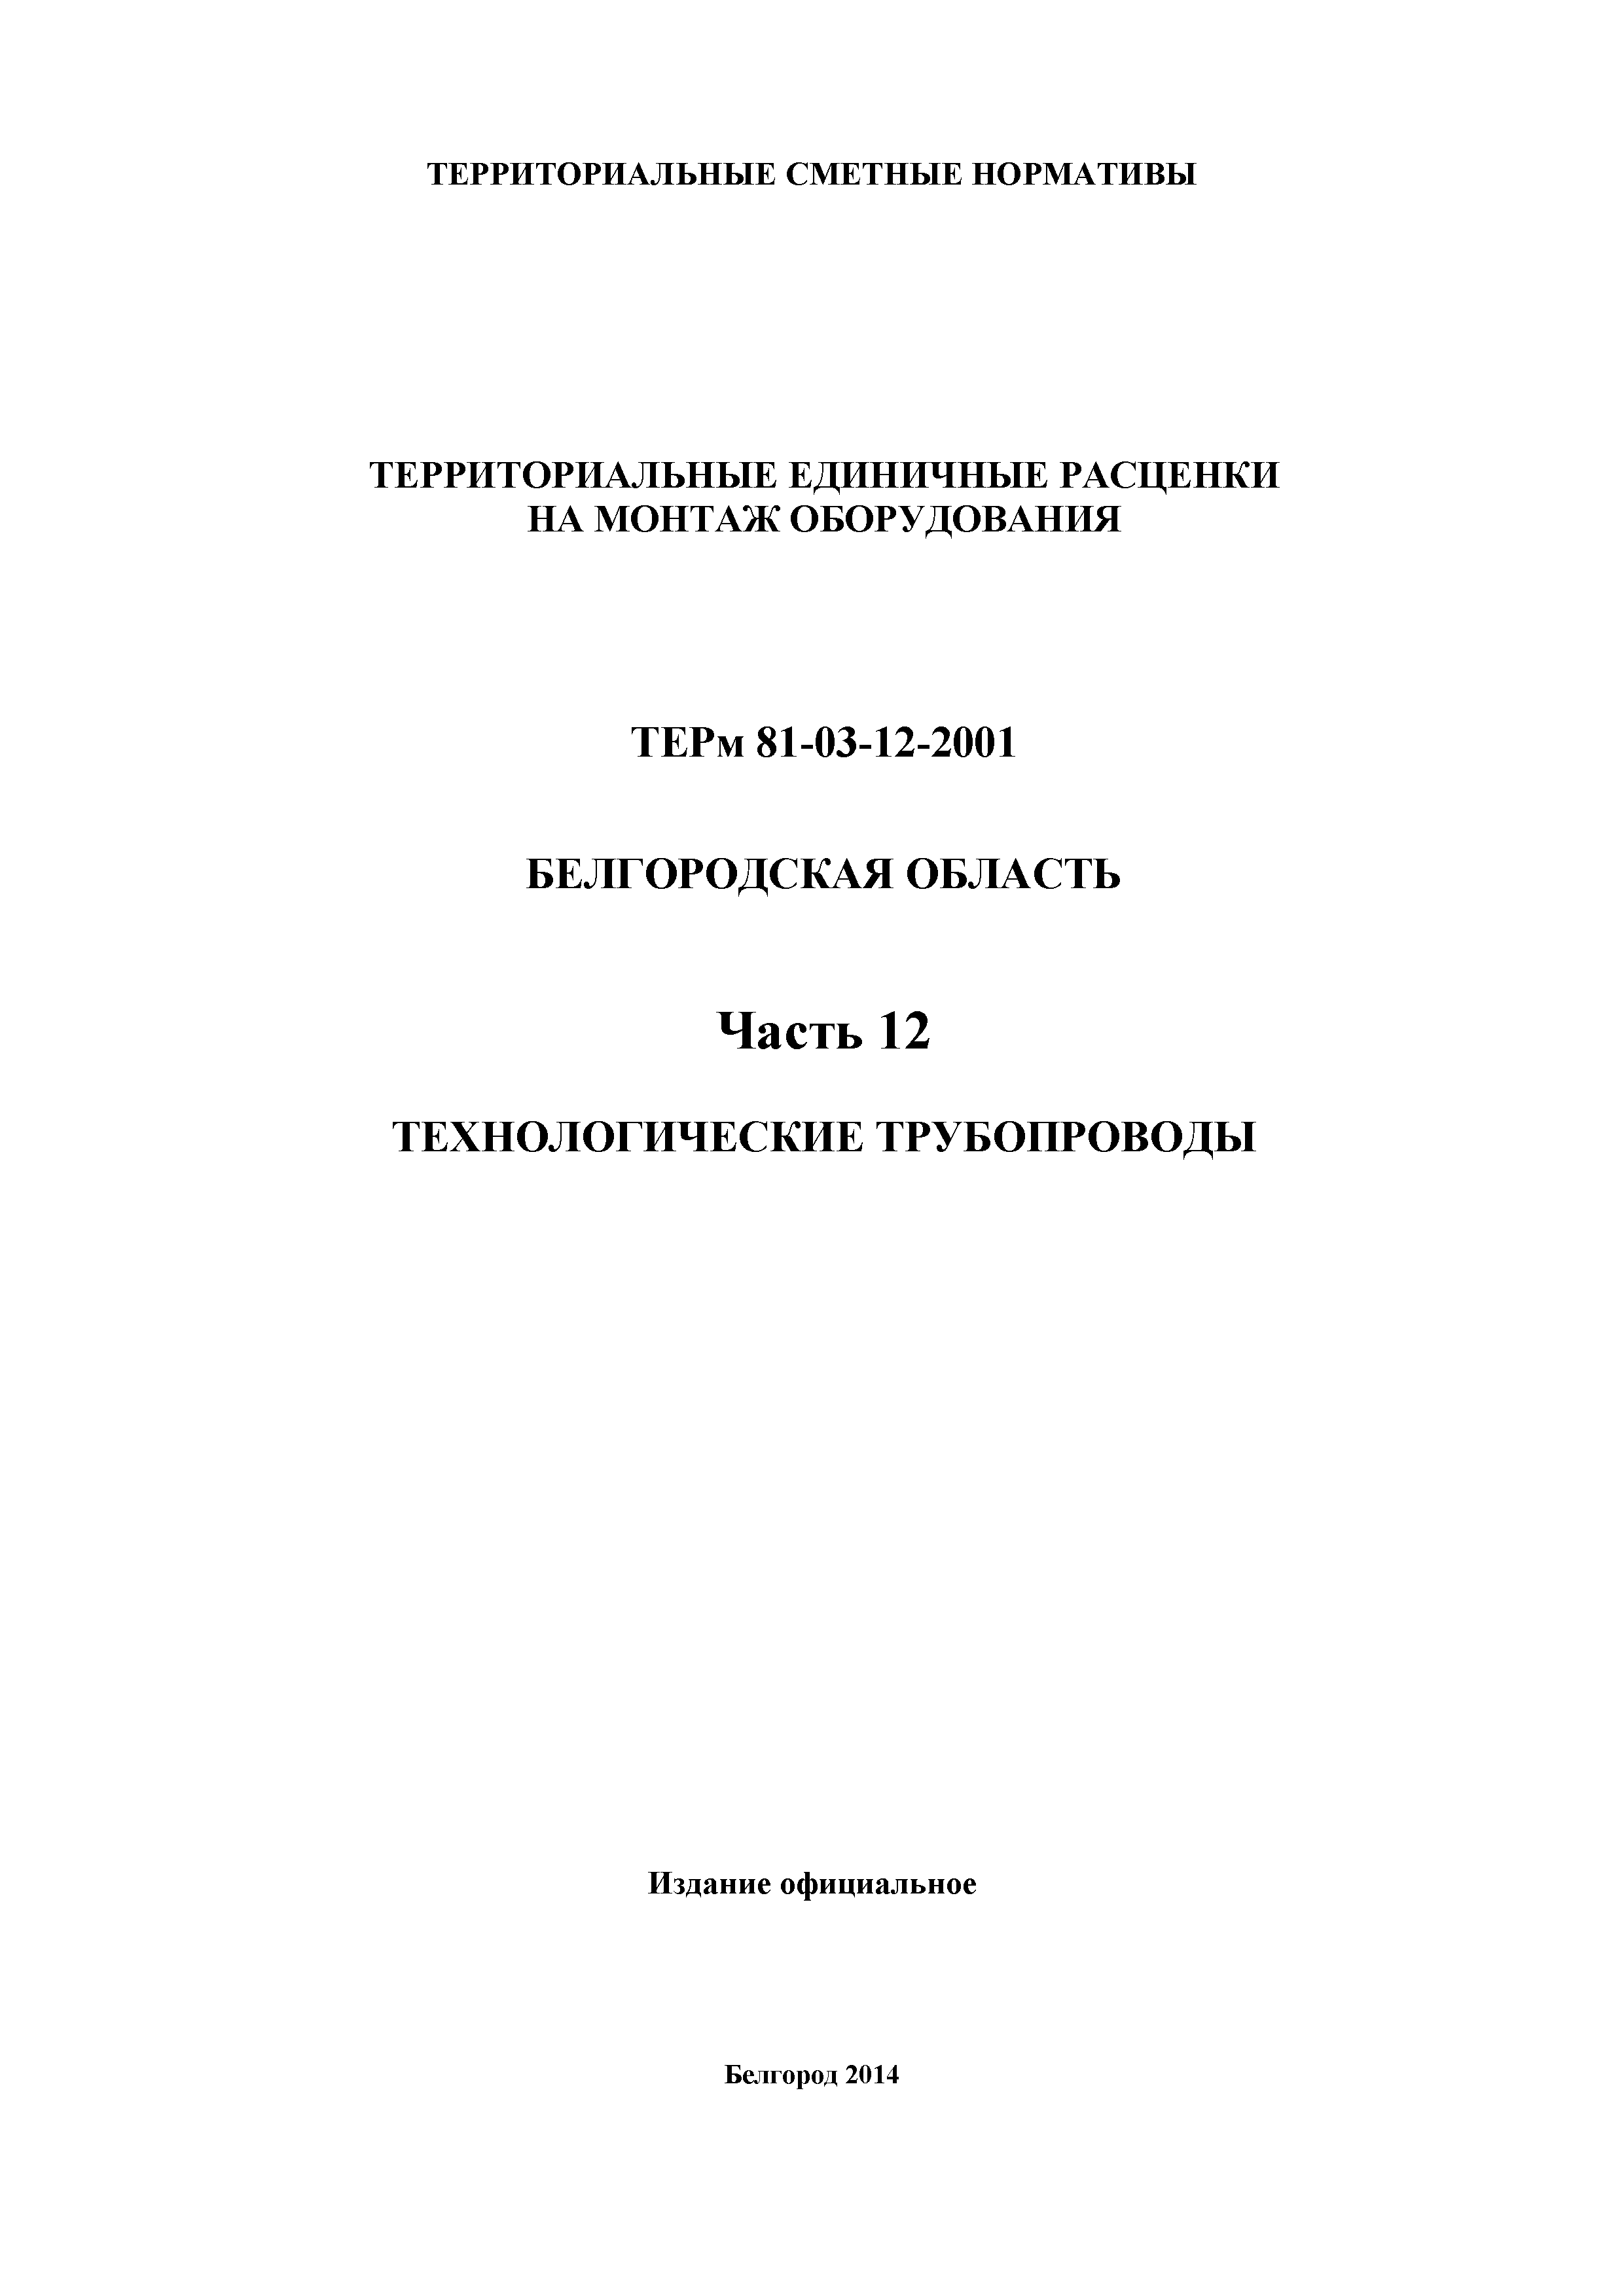 ТЕРм Белгородская область 81-03-12-2001